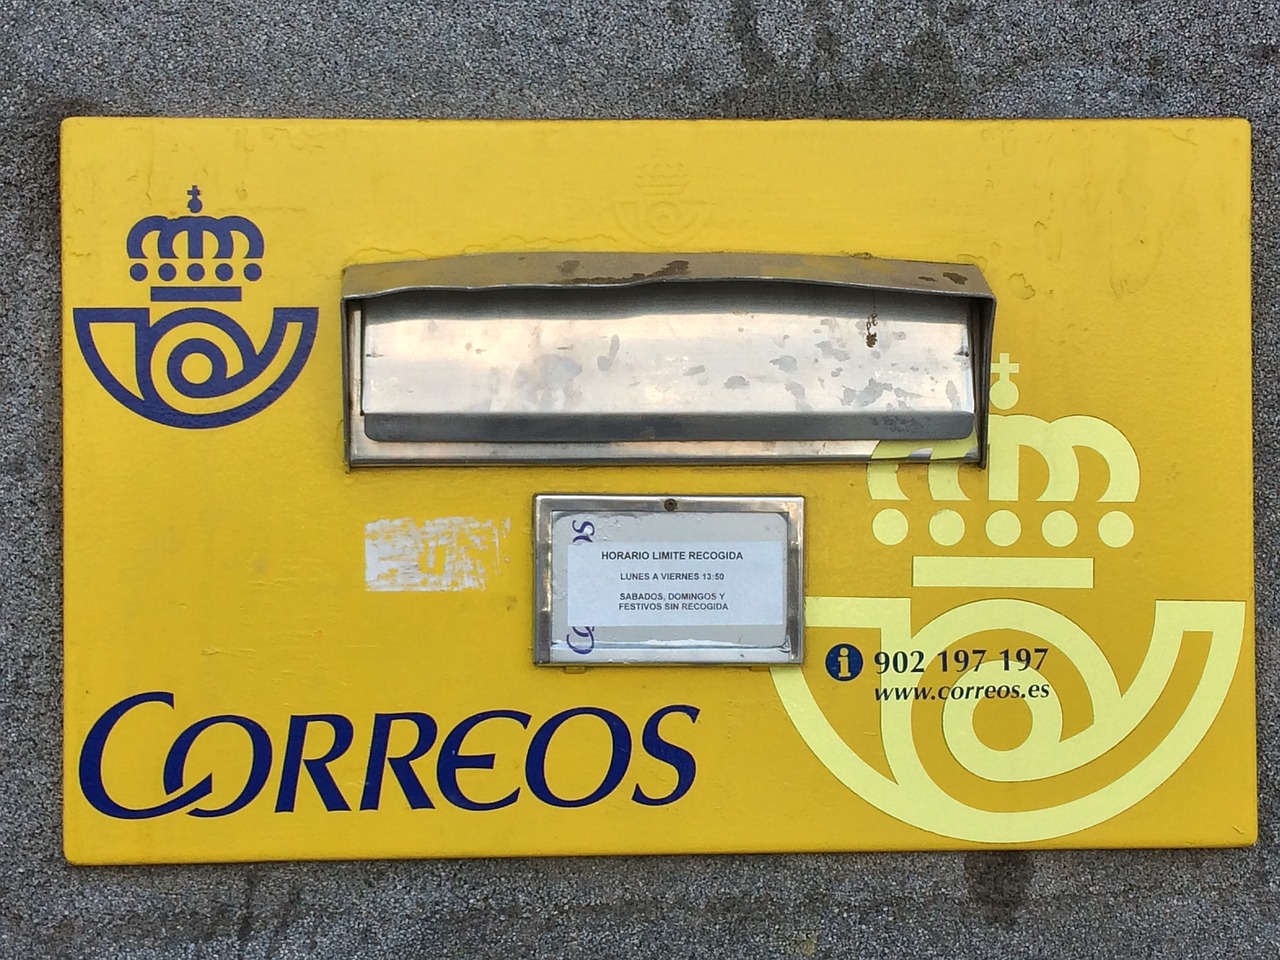 Correos, Pašto Dėžutės, Ispanija, Paštas, Pranešimas, Paštas, Pašto Dėžutę, Siena, Europa, Dėžė